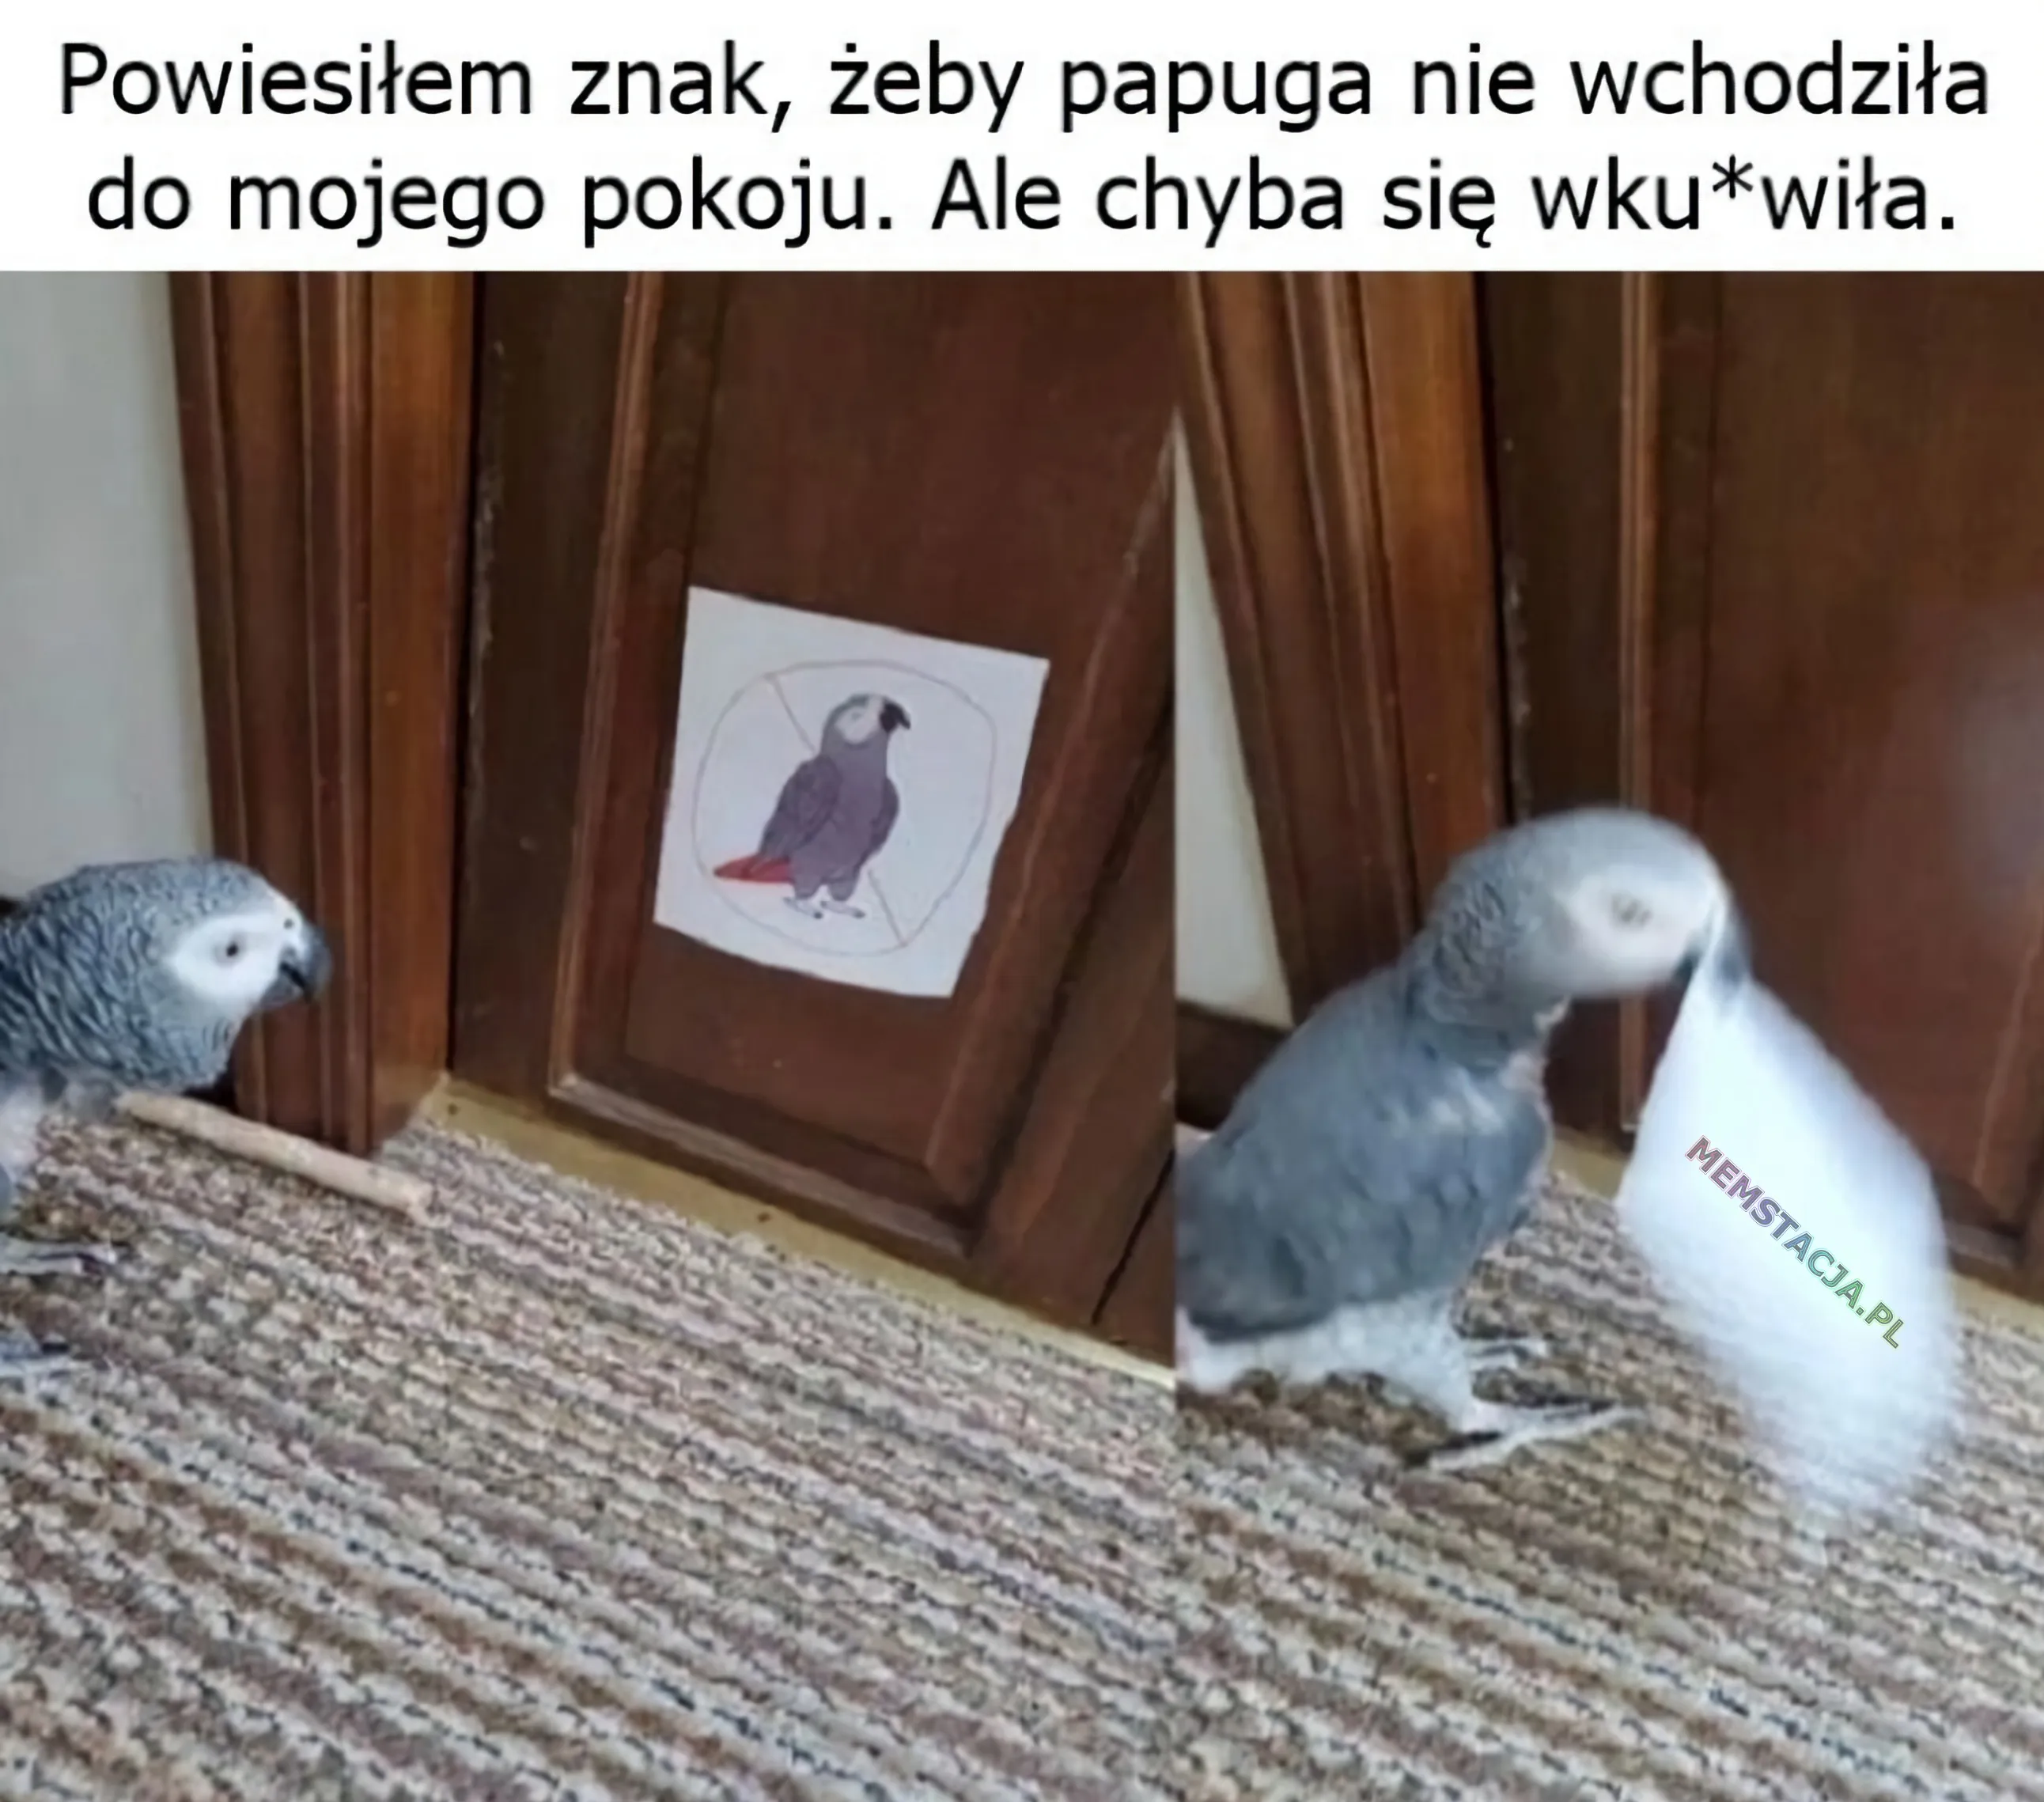 Zdjęcie papugi, która zrywa zakaz wejścia dla papug: 'Powiesiłem znak, żeby papuga nie wchodziła do mojego pokoju. Ale chyba się wku*wiła.'